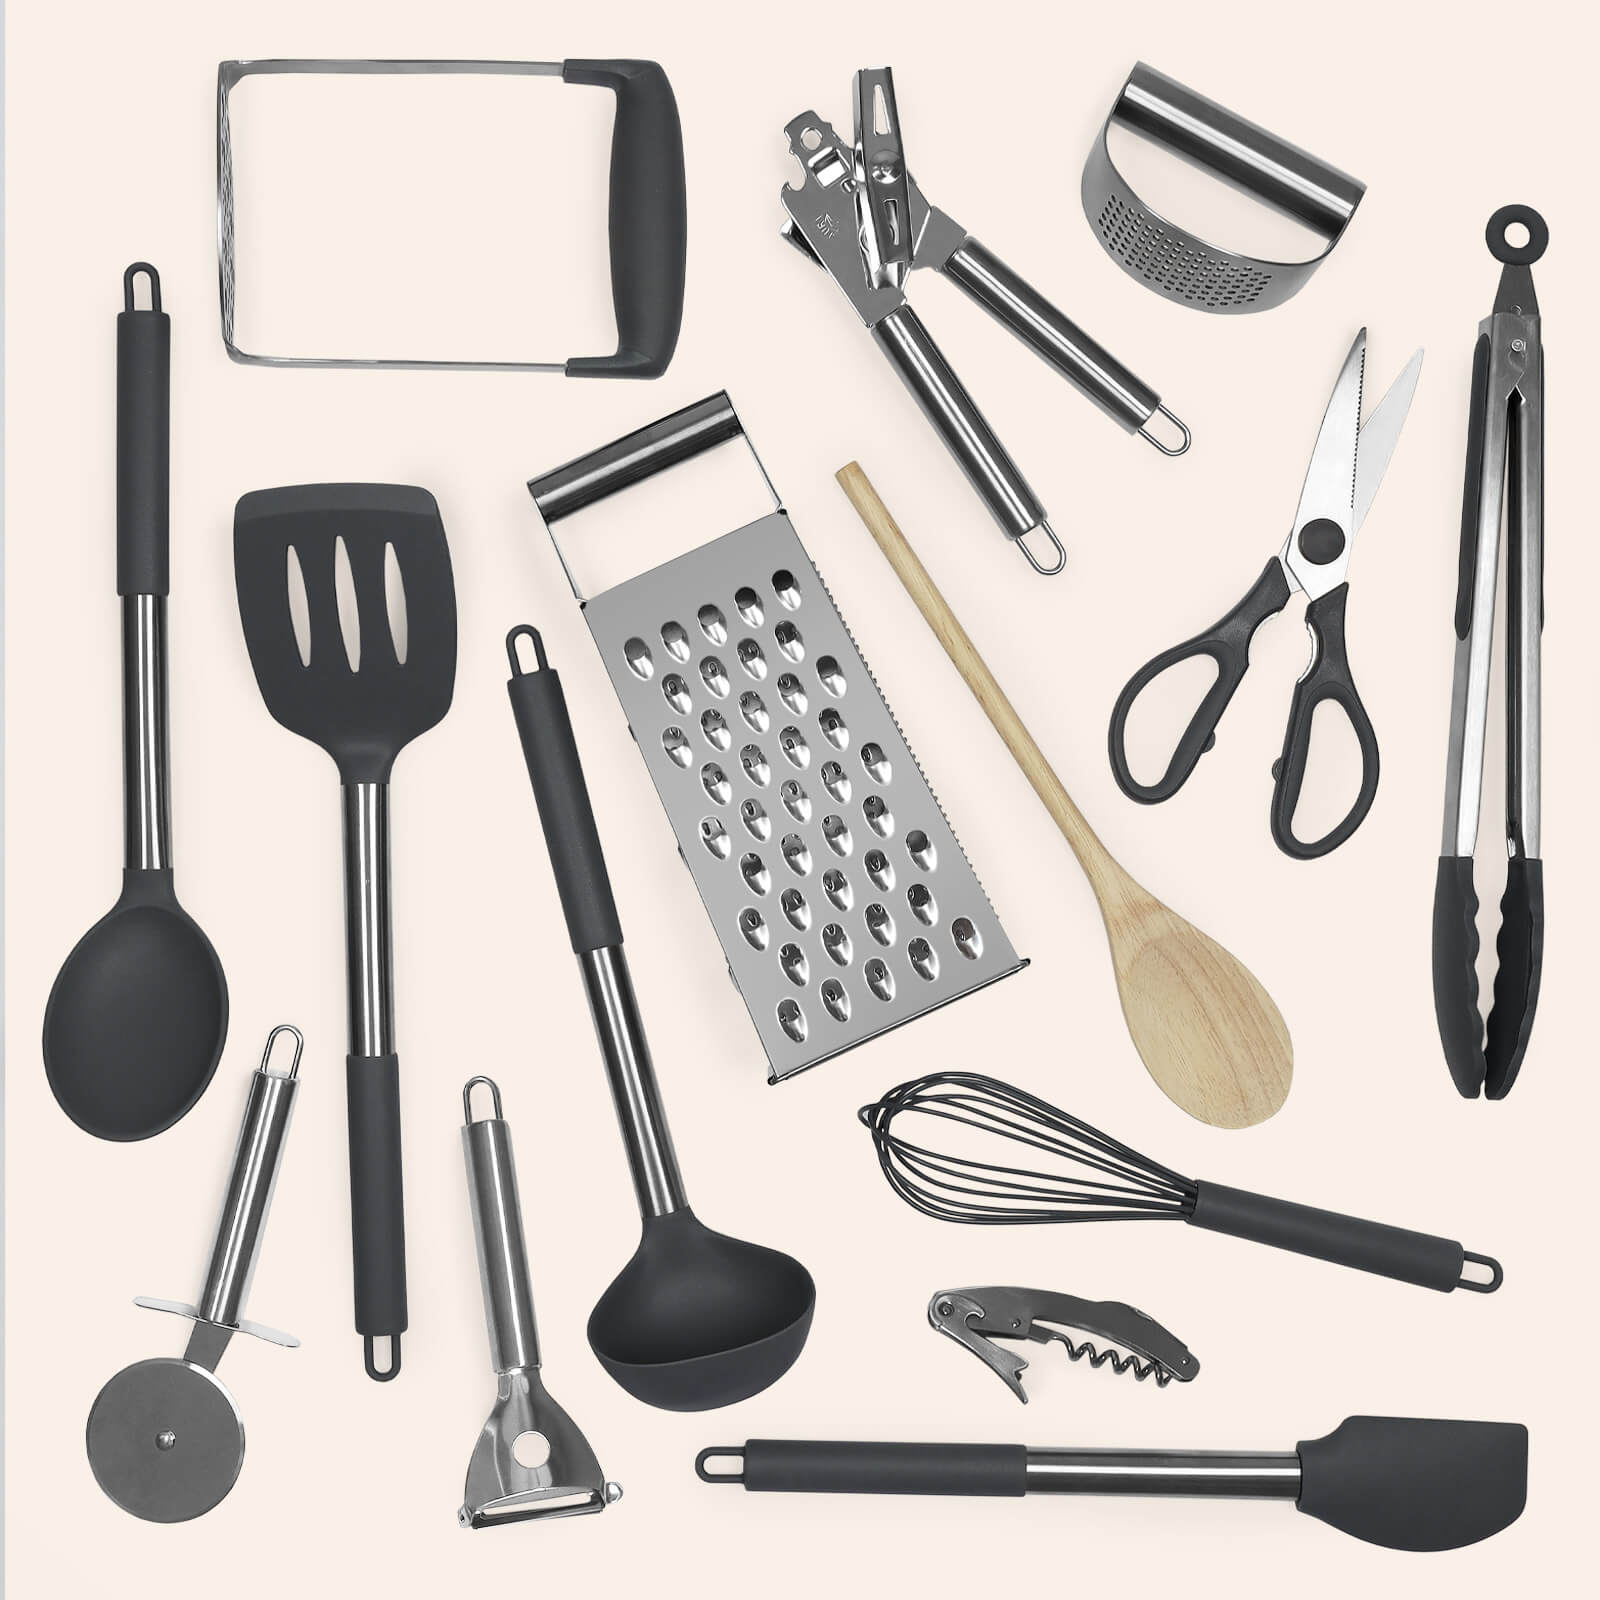 The Kitchen Kit – UniKitOut